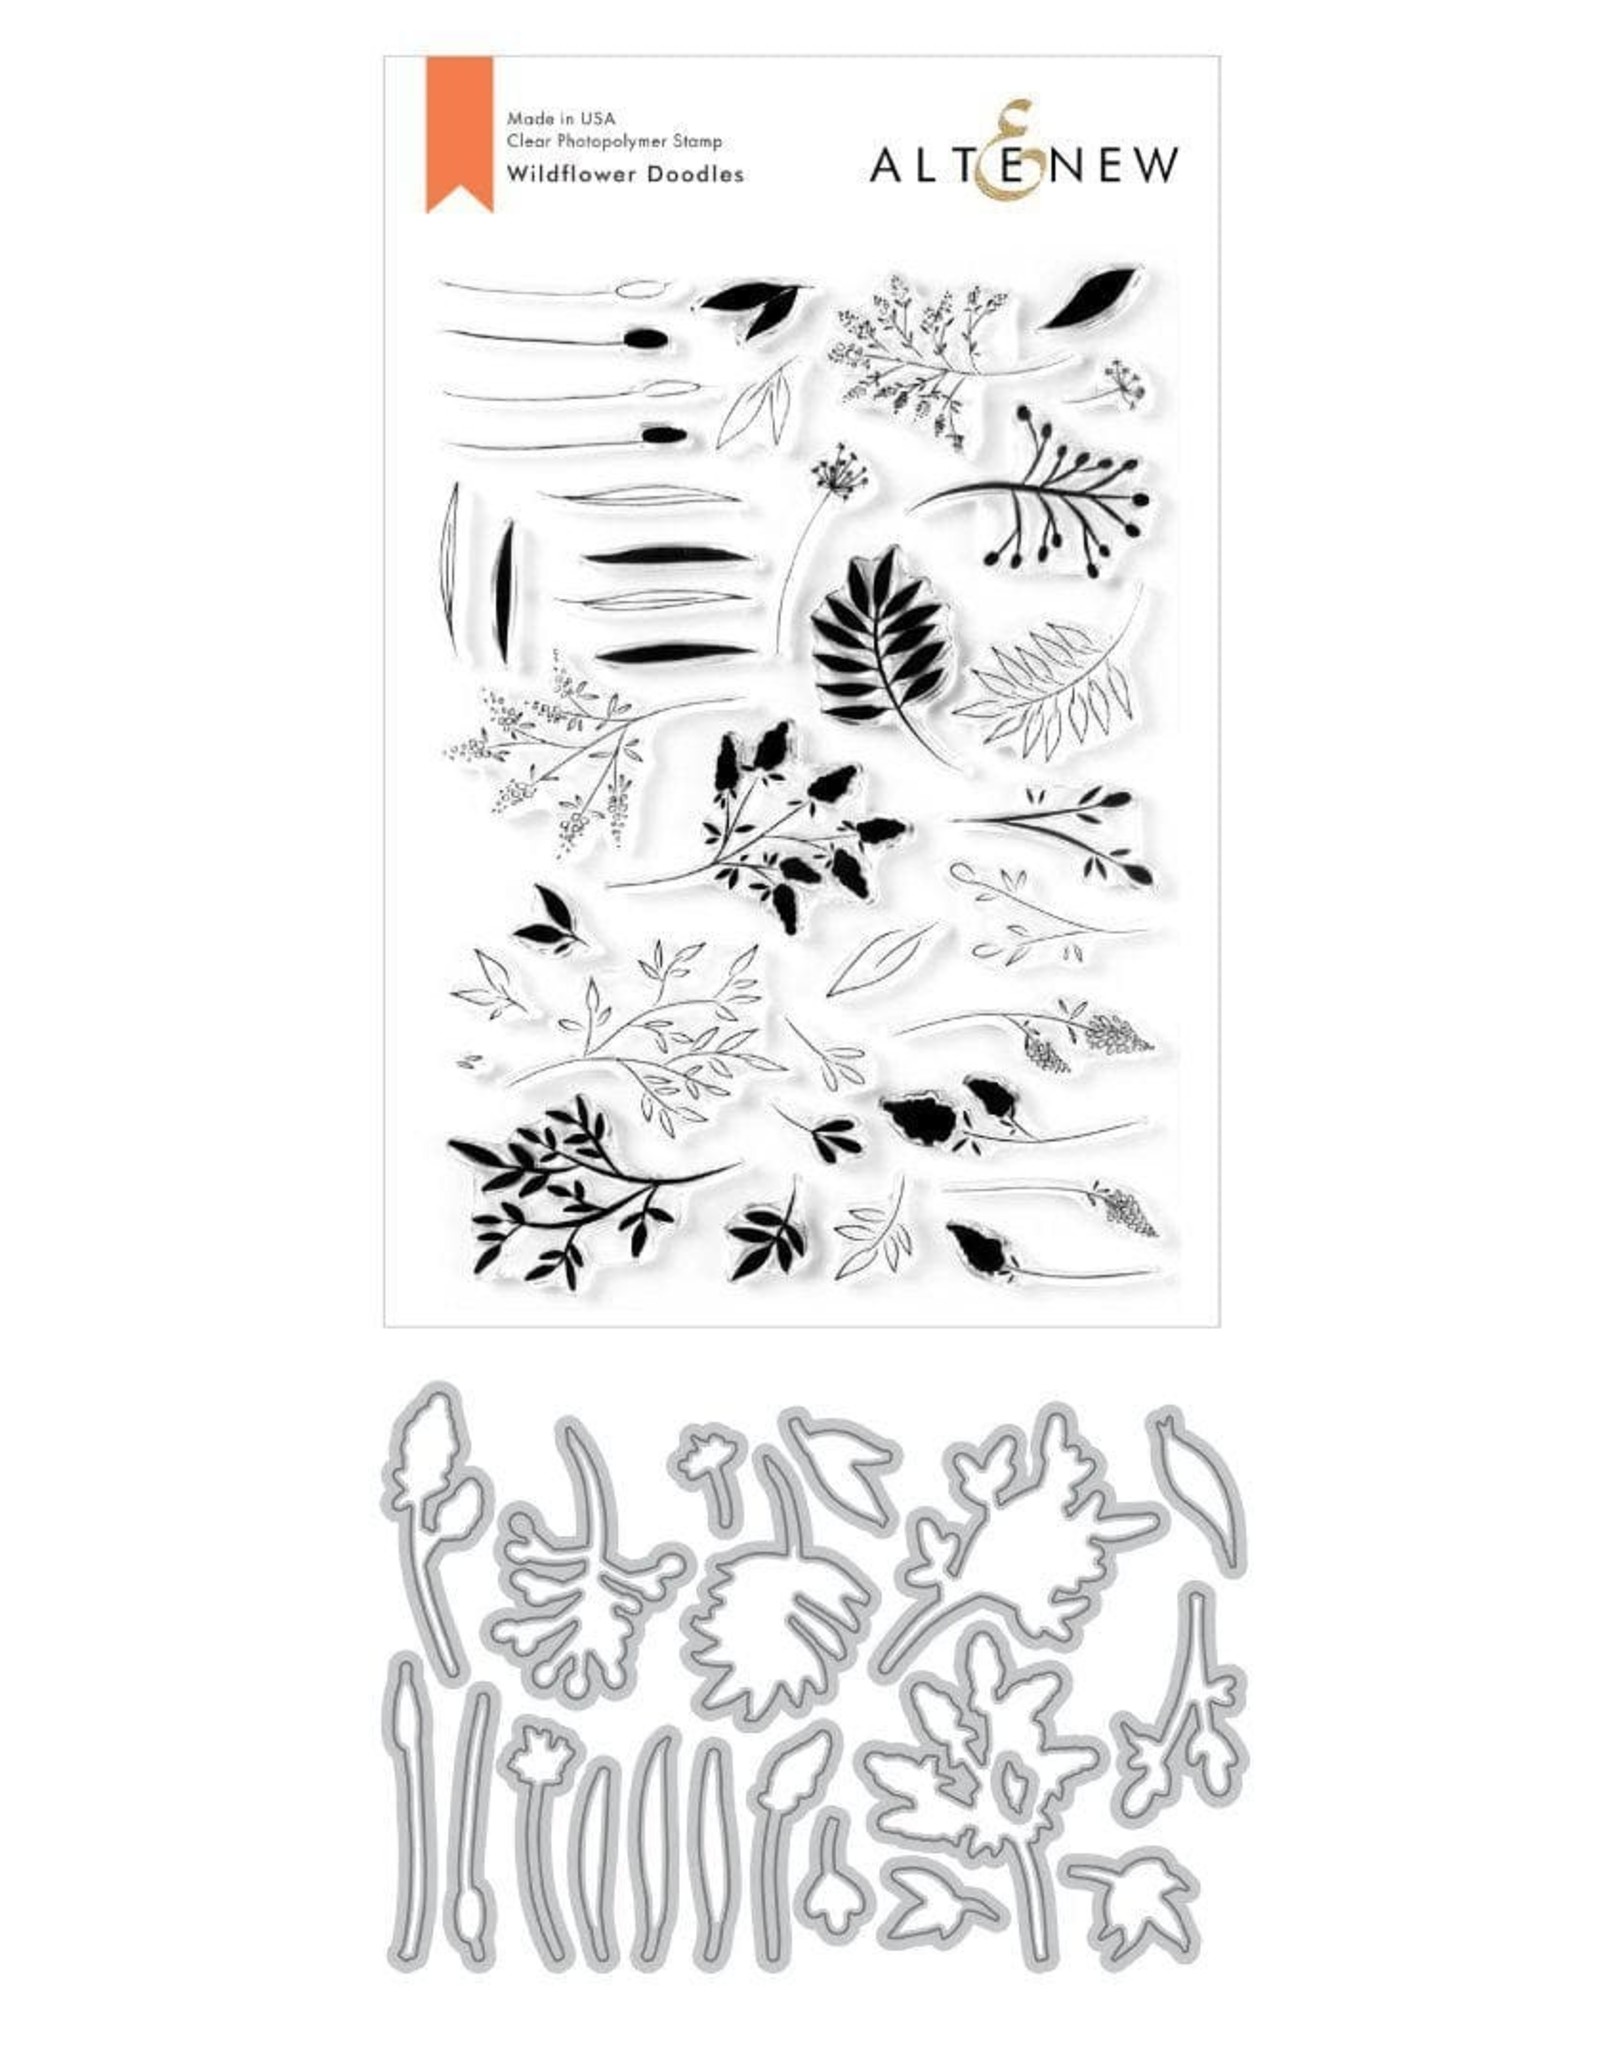 ALTENEW Wildflower Doodles Stamp & Die Bundle